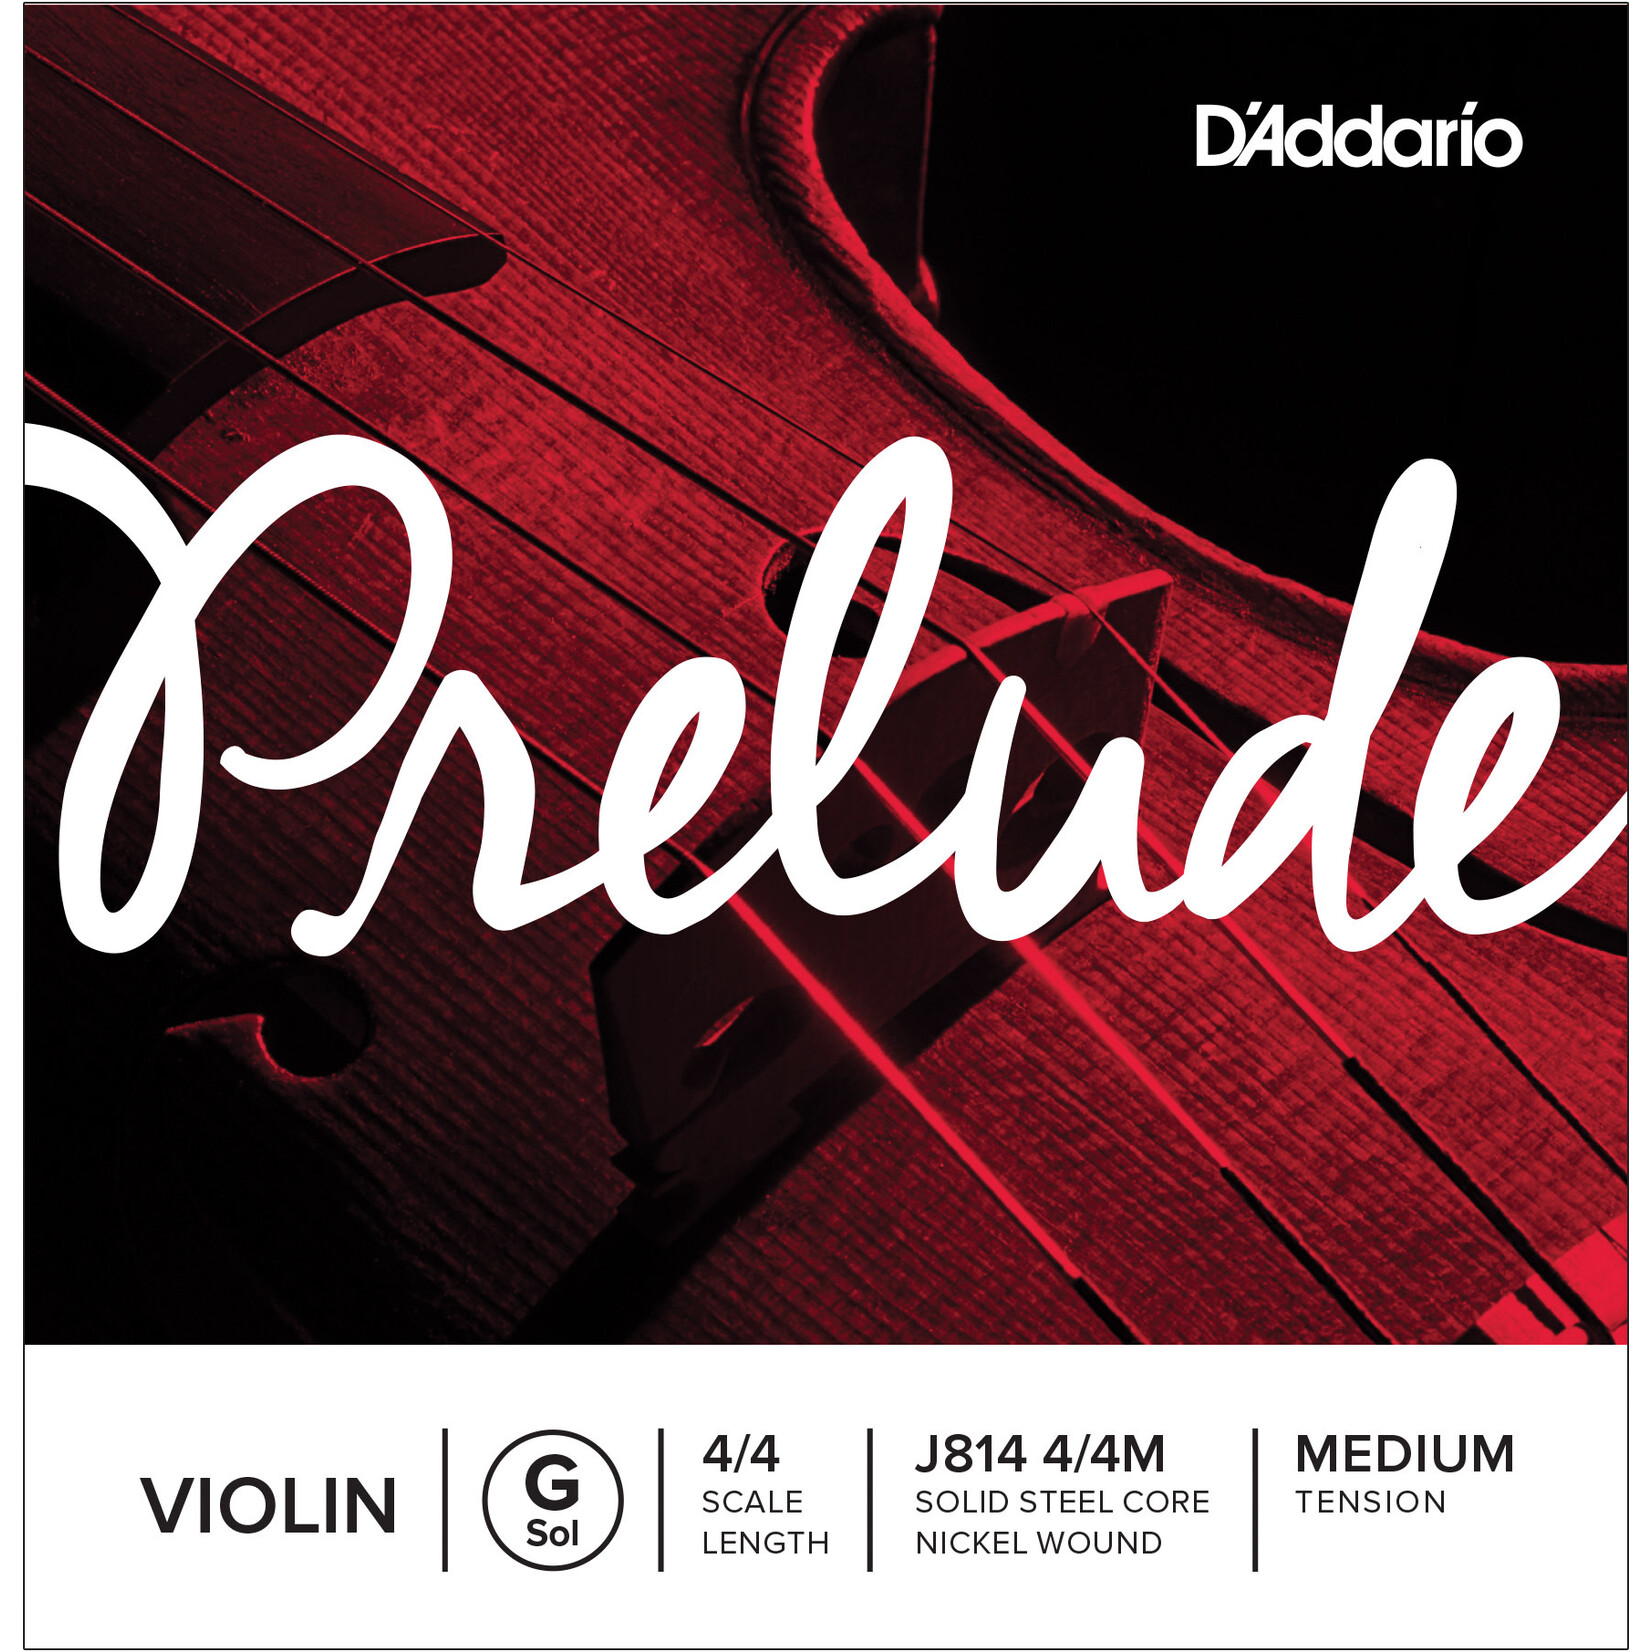 D'Addario D'Addario Prelude Violin G 4/4 Scale Medium Tension *Single String